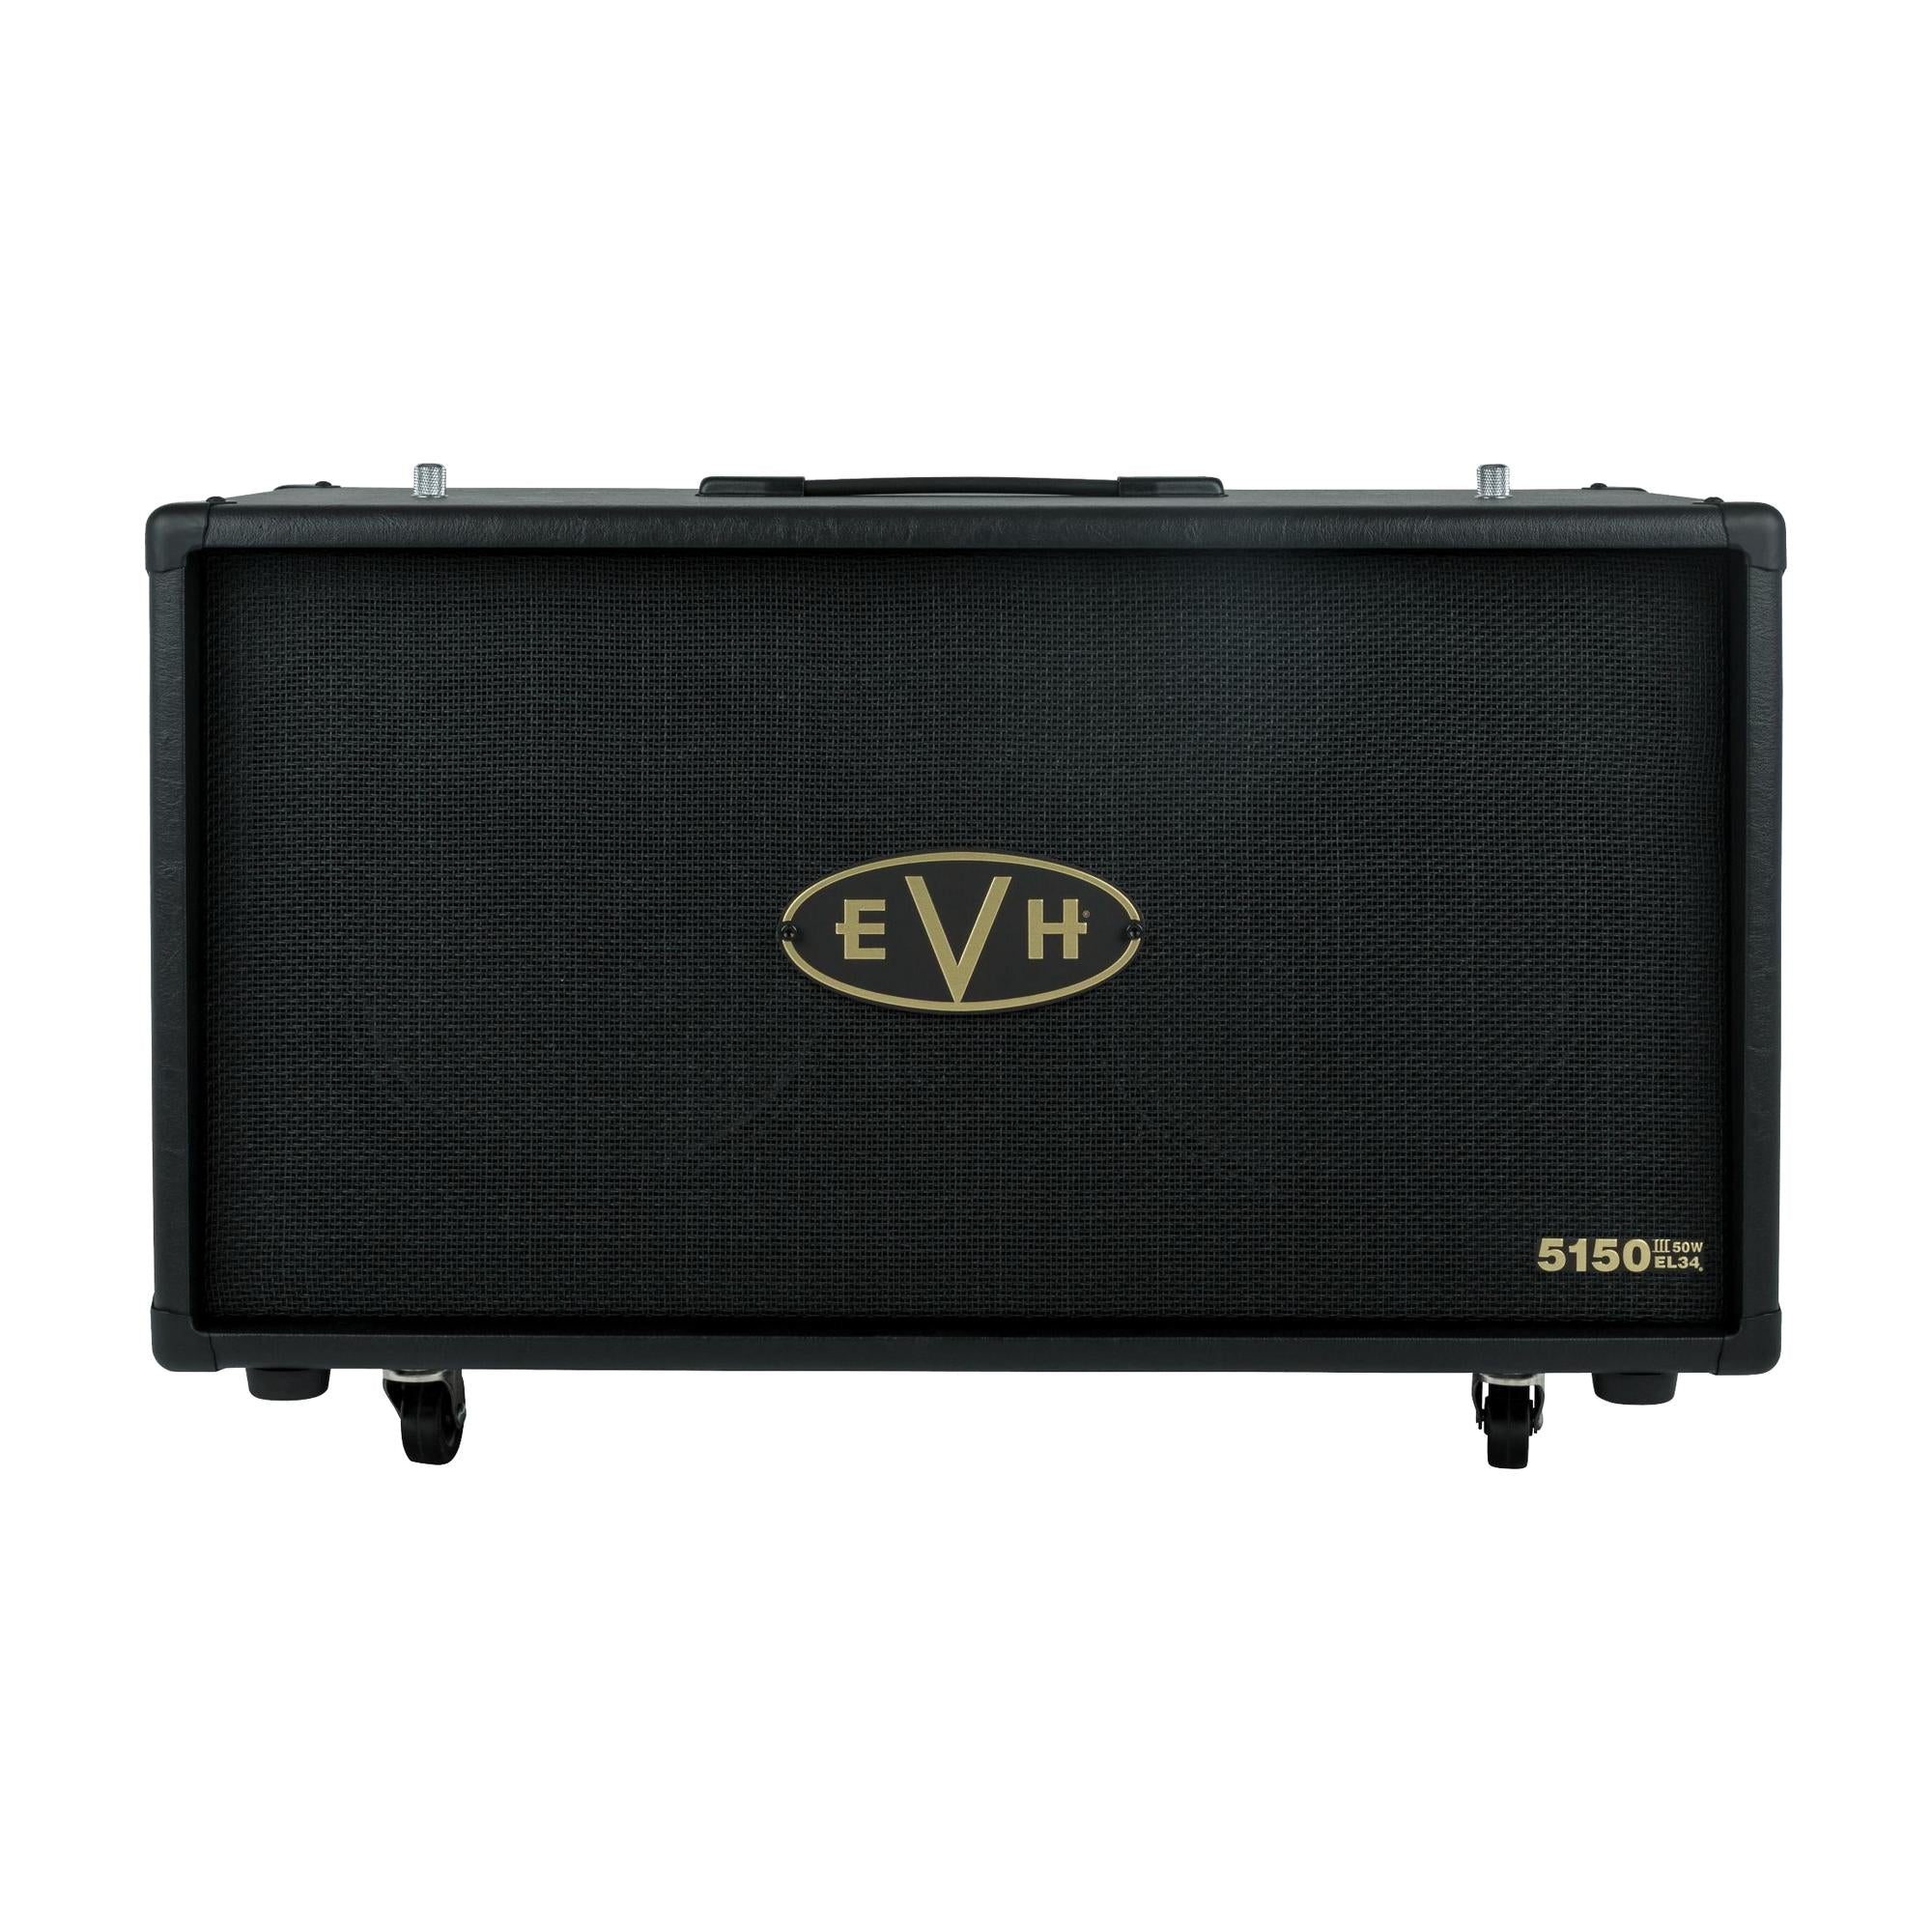 EVH 5150III EL34 212ST 50W 2x12 Guitar Speaker Cabinet, Black